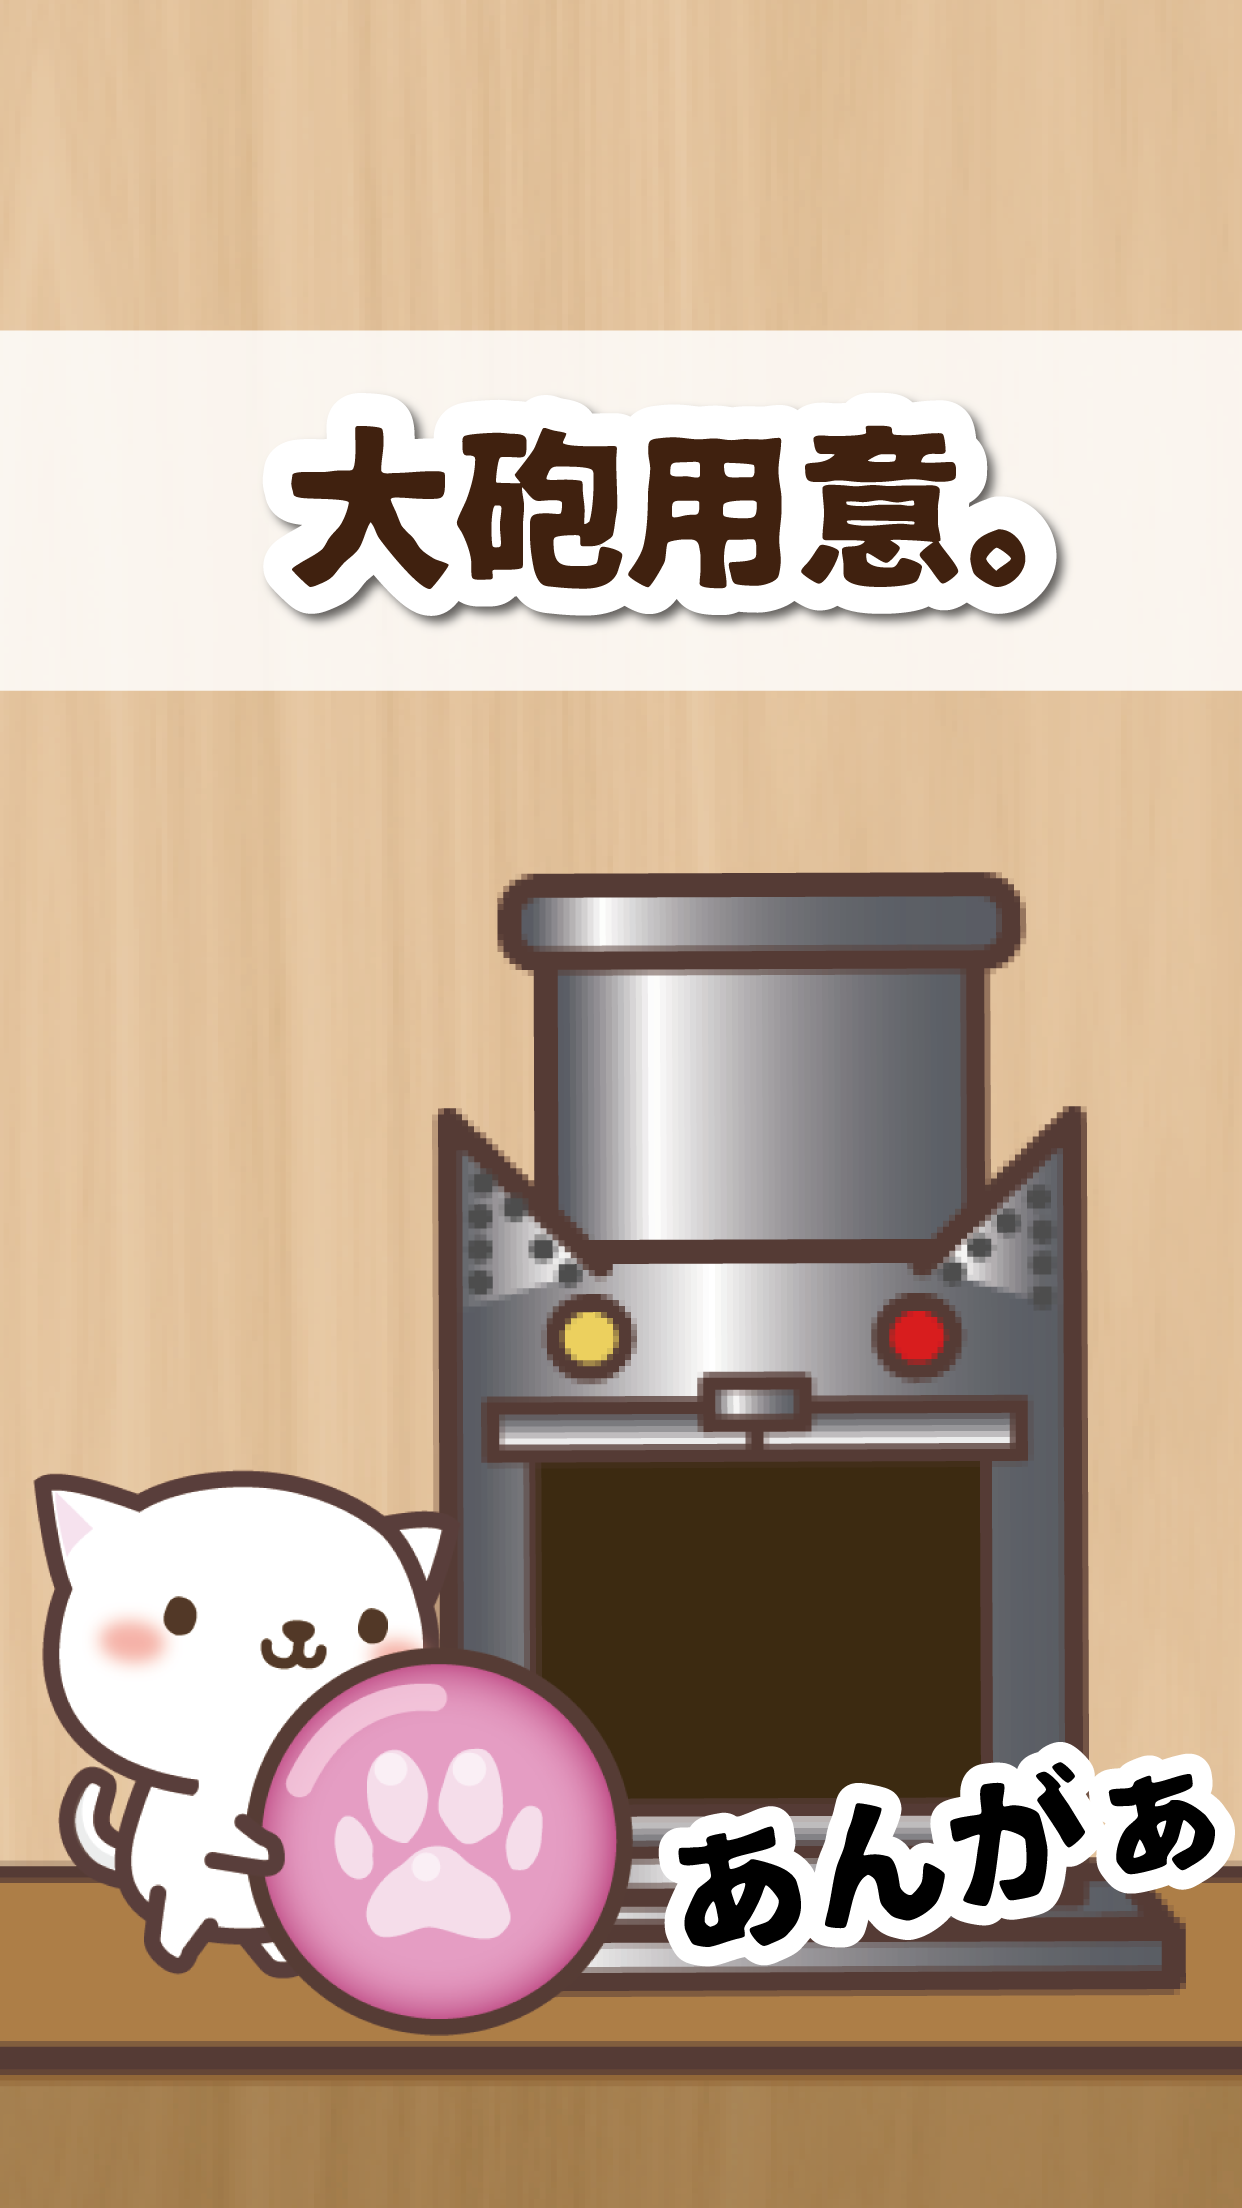 Screenshot 1 of 고양이 대 마우스 스매쉬!! -상쾌한 풀링 액션- 1.0.1